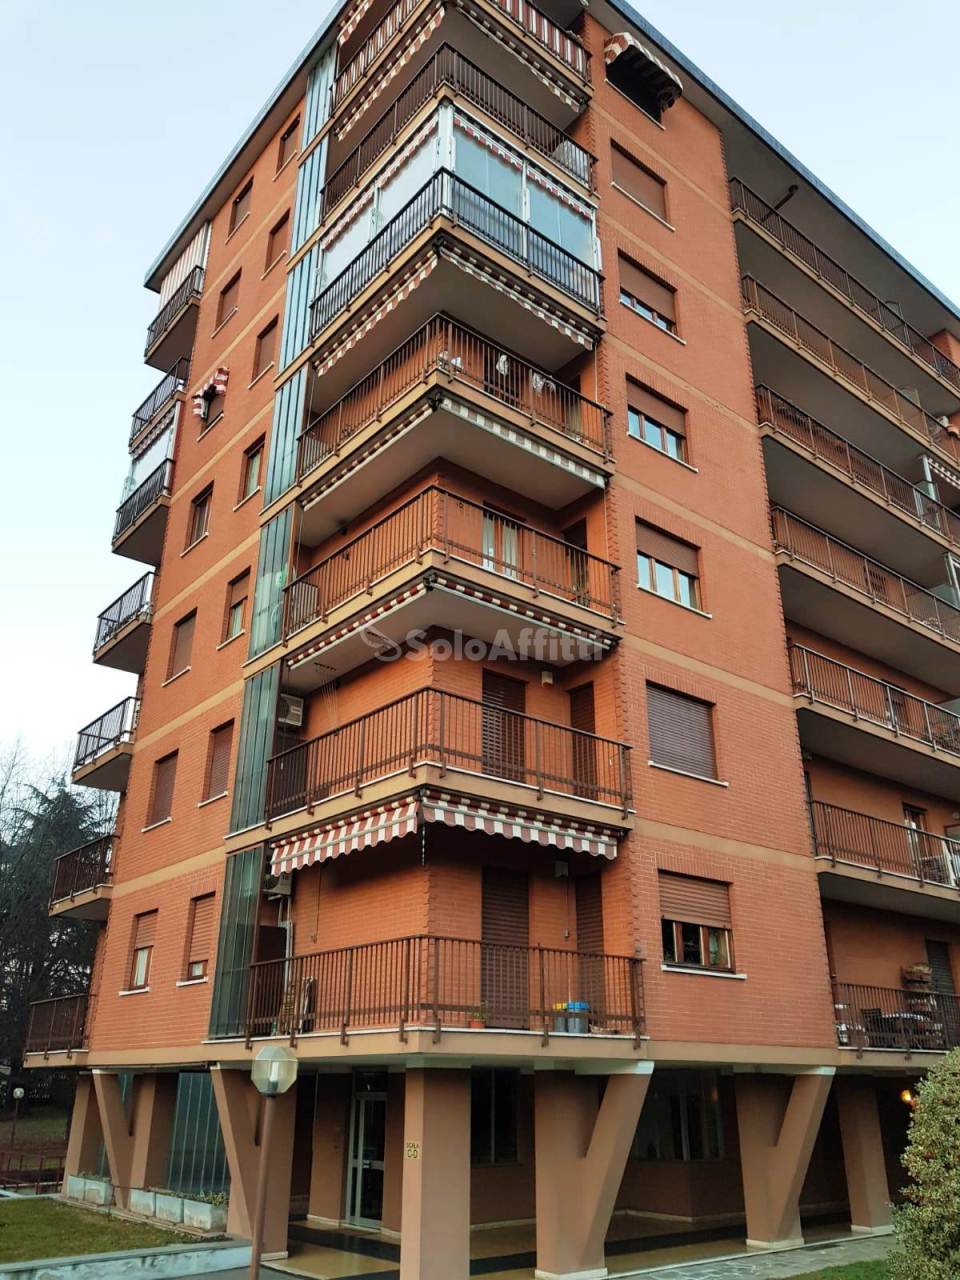 Appartamento in affitto a Beinasco, 2 locali, prezzo € 350 | CambioCasa.it